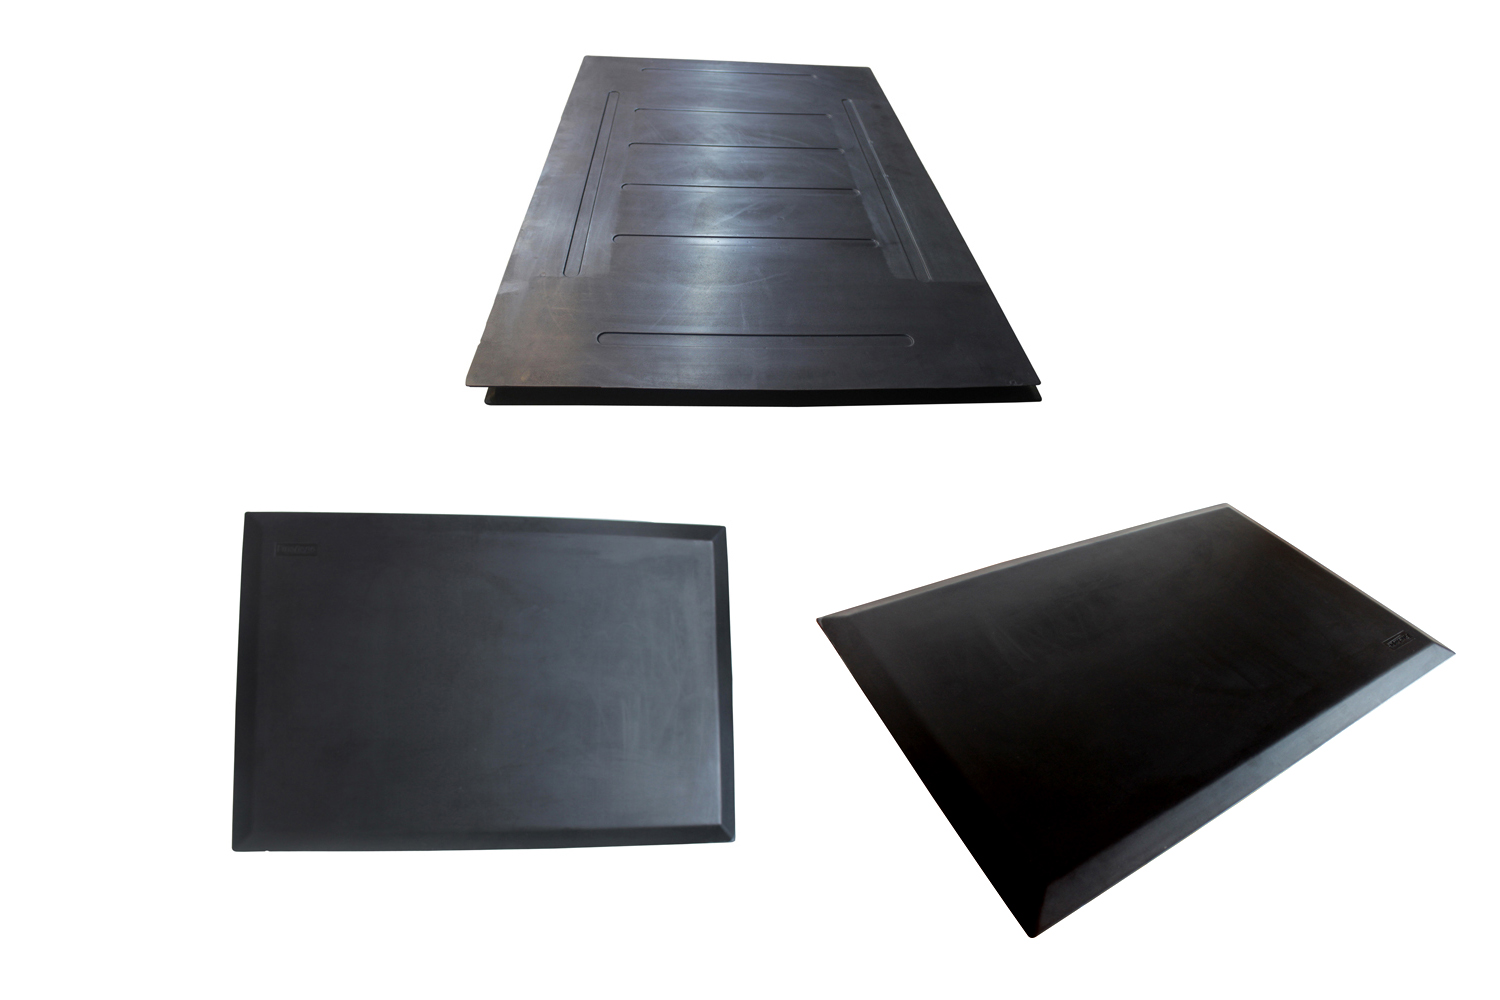 floor mats for standing,Anti Fatigue Mat ,Comfort Standing mat,anti fatigue floor mats